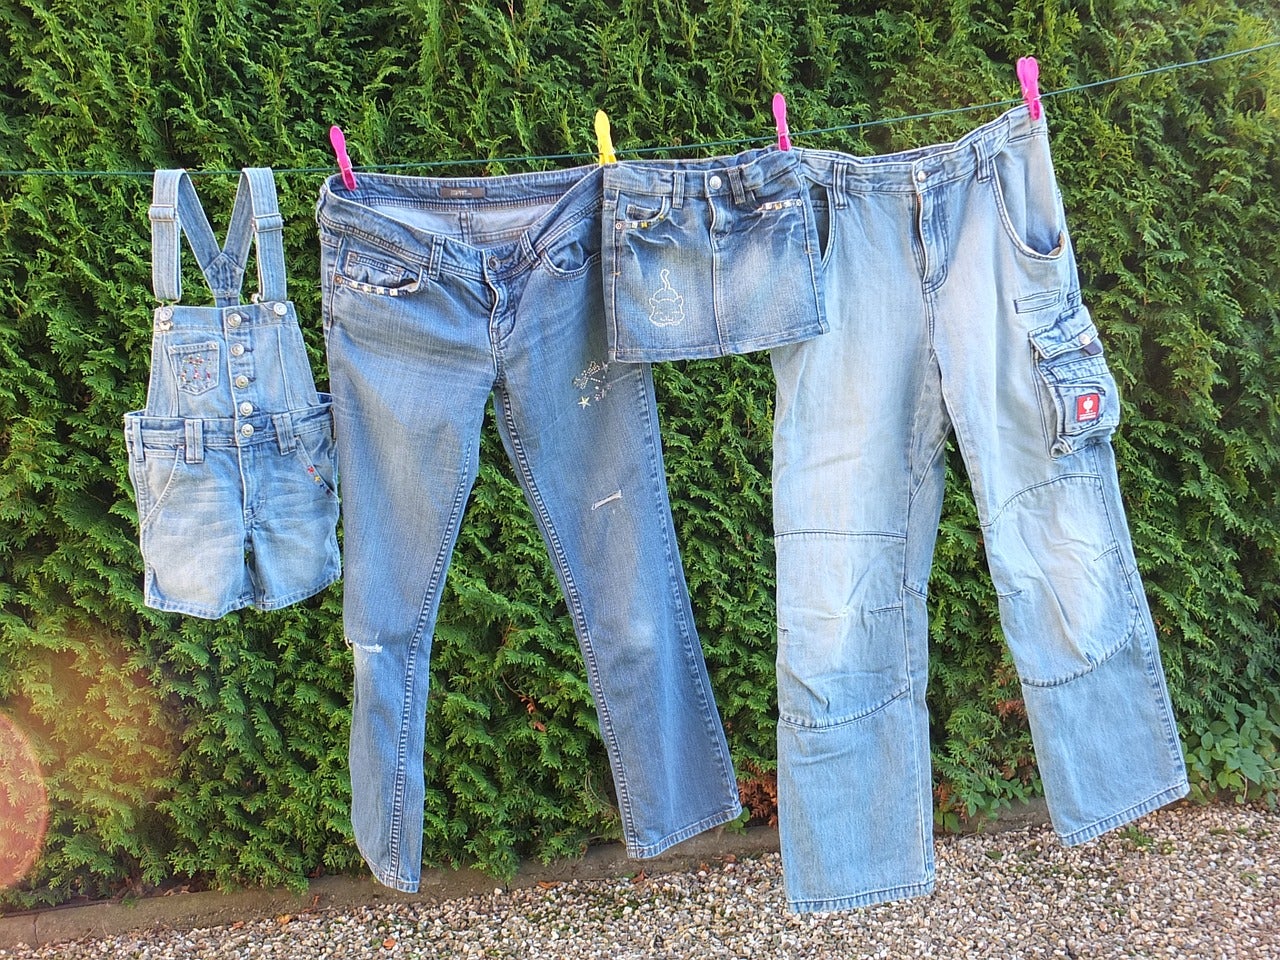 Cómo lavar los pantalones vaqueros o jeans (trucos que evitan el